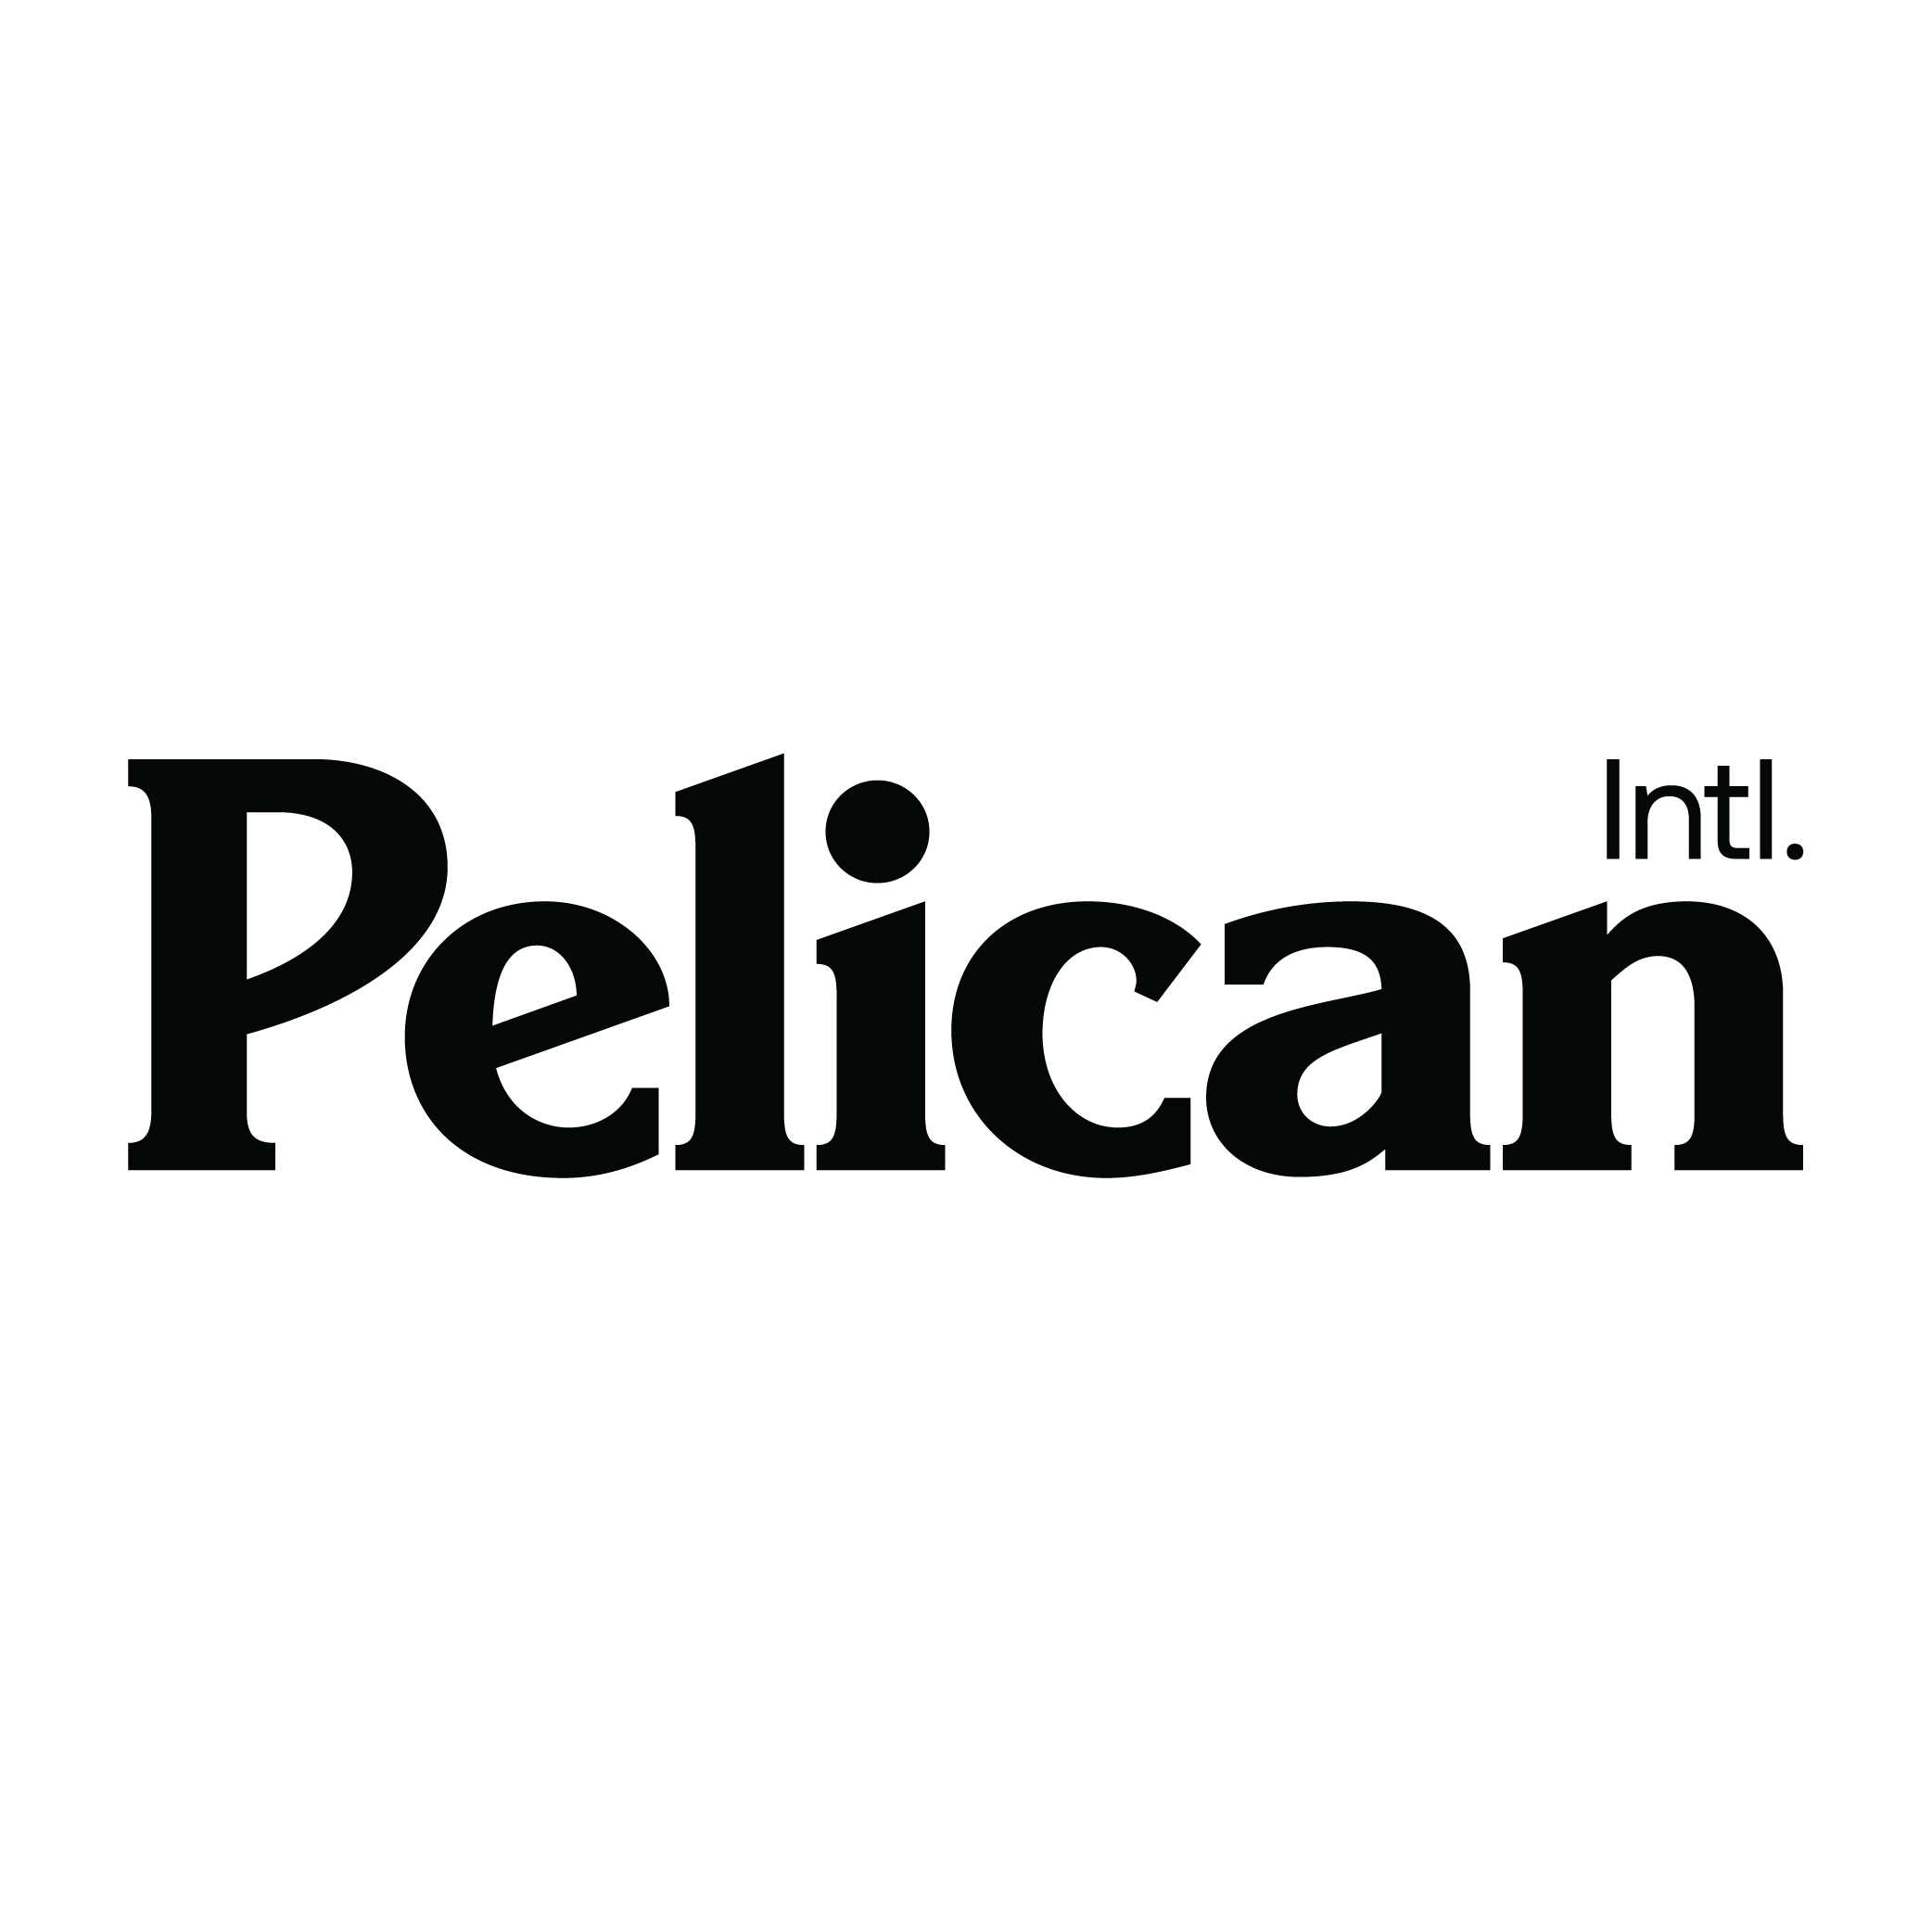 Pelican_Int.png